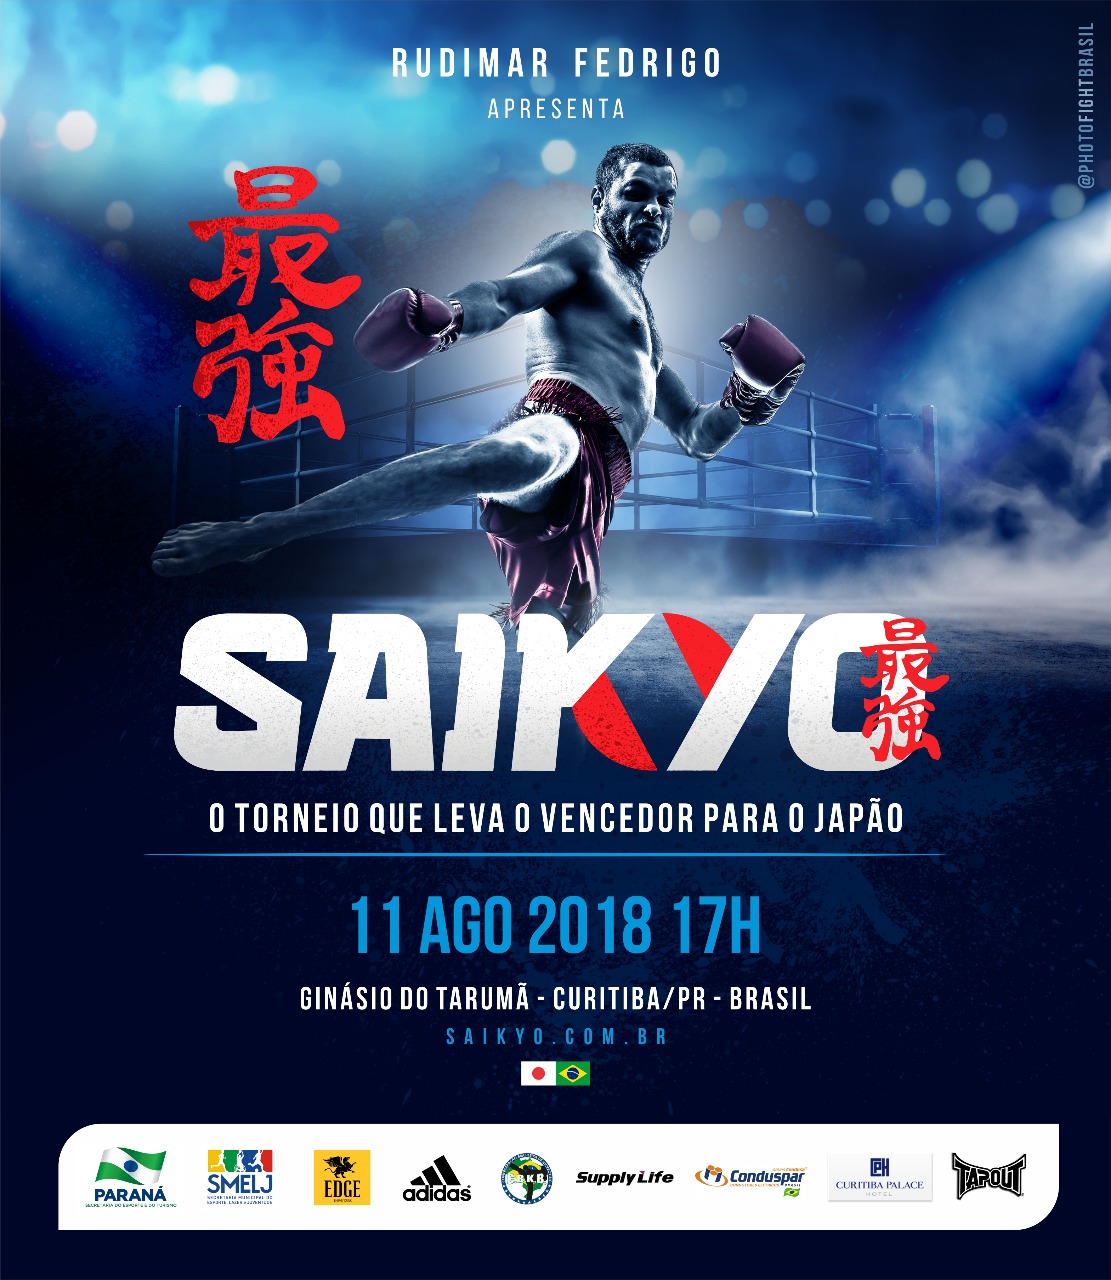 Saikyo define lutadores de GP de Kickboxing que vai levar campeão para disputar o Rizin FF no Japão